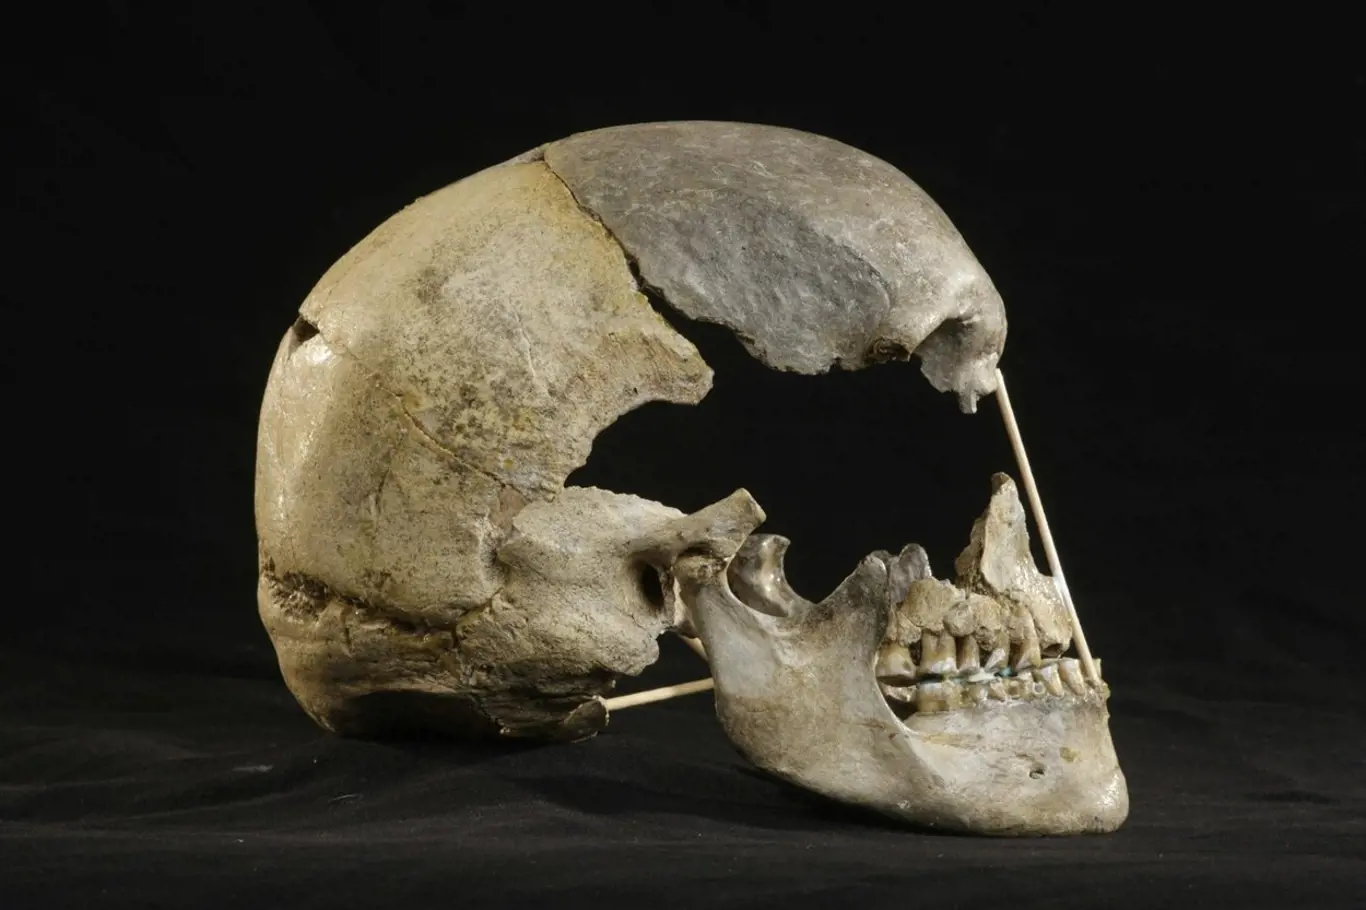 Lebka moderního člověka ženského pohlaví ze Zlatých kun. Genetické sekvenování lidských ostatků starých 45 000 let odhalilo dosud neznámou migraci do Evropy a ukázalo, že míšení s neandertálci bylo v tomto období běžnější, než se dosud předpokládalo.